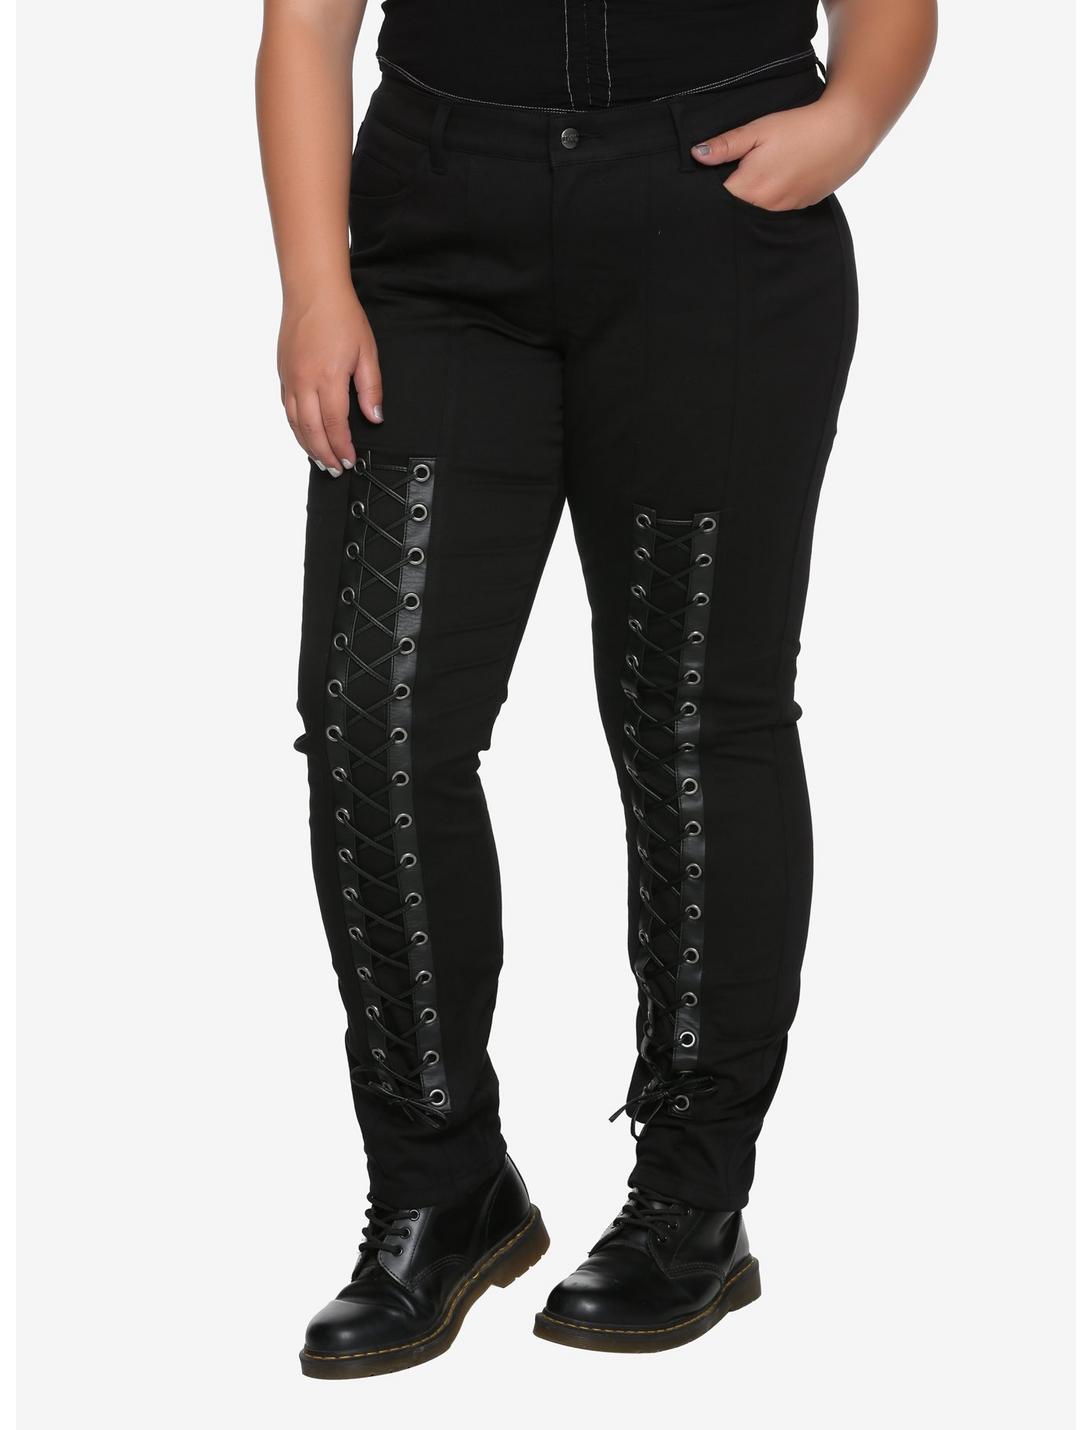 Tripp Black Lace-Up Pants Plus Size, BLACK, hi-res